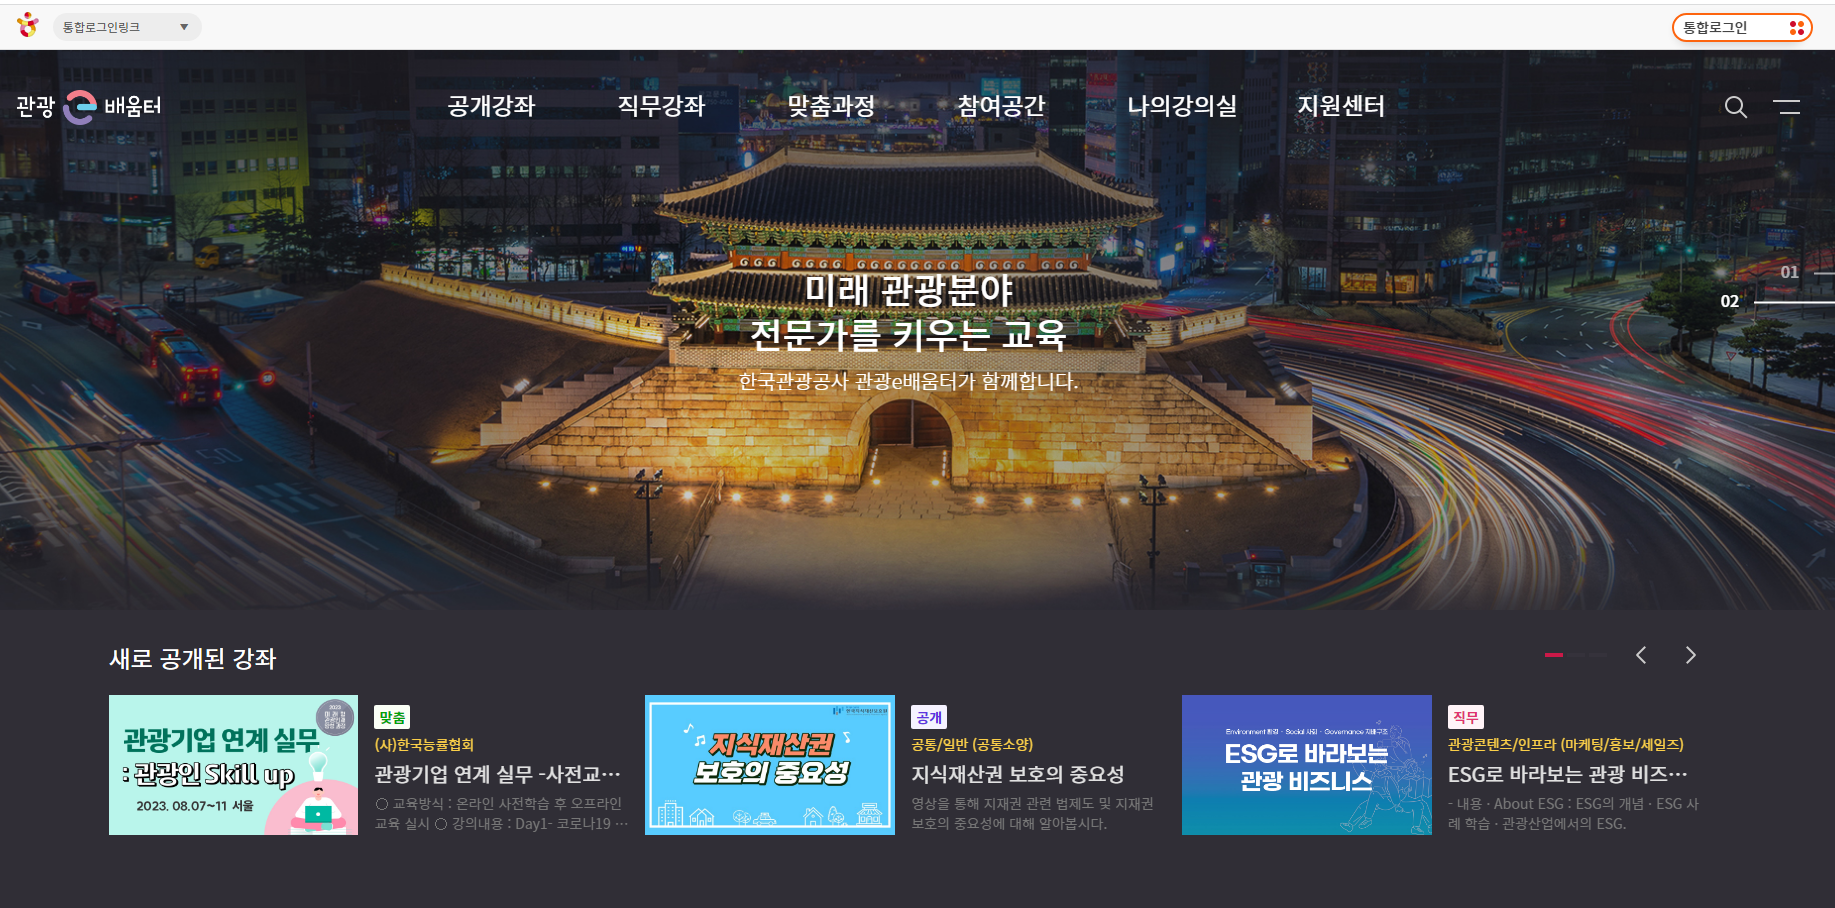 관광e배움터 한국관광 온라인마케팅 통합교육플랫폼